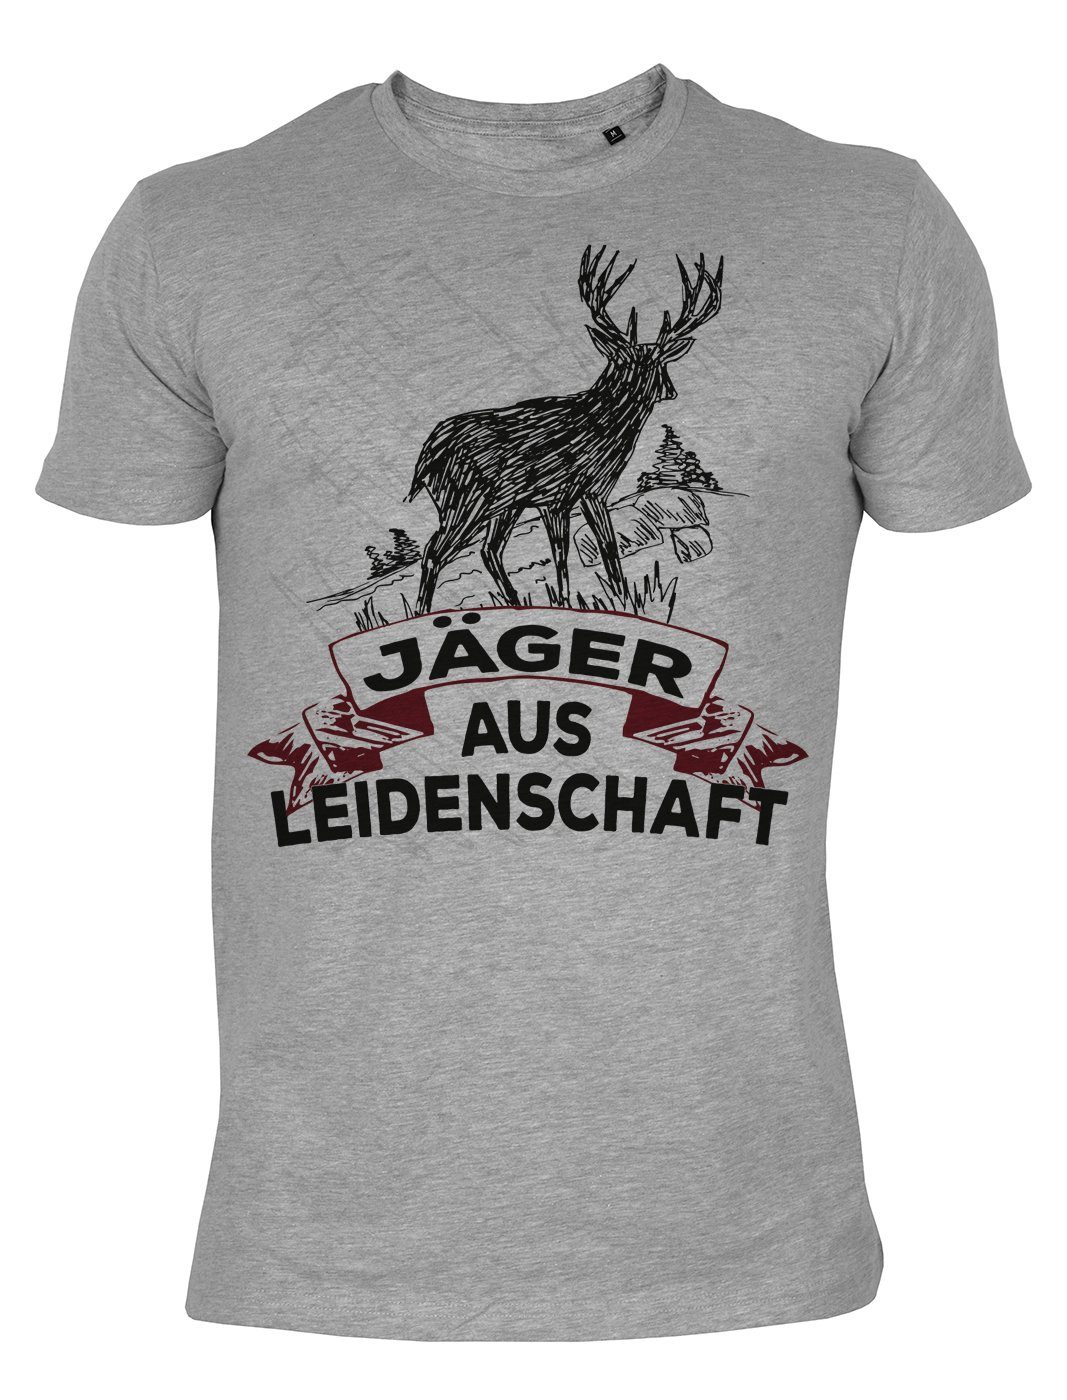 Tini - Shirts T-Shirt Jagdsport Motiv Jäger Hirsch Motiv Jagdsport : Jäger aus Leidenschaft